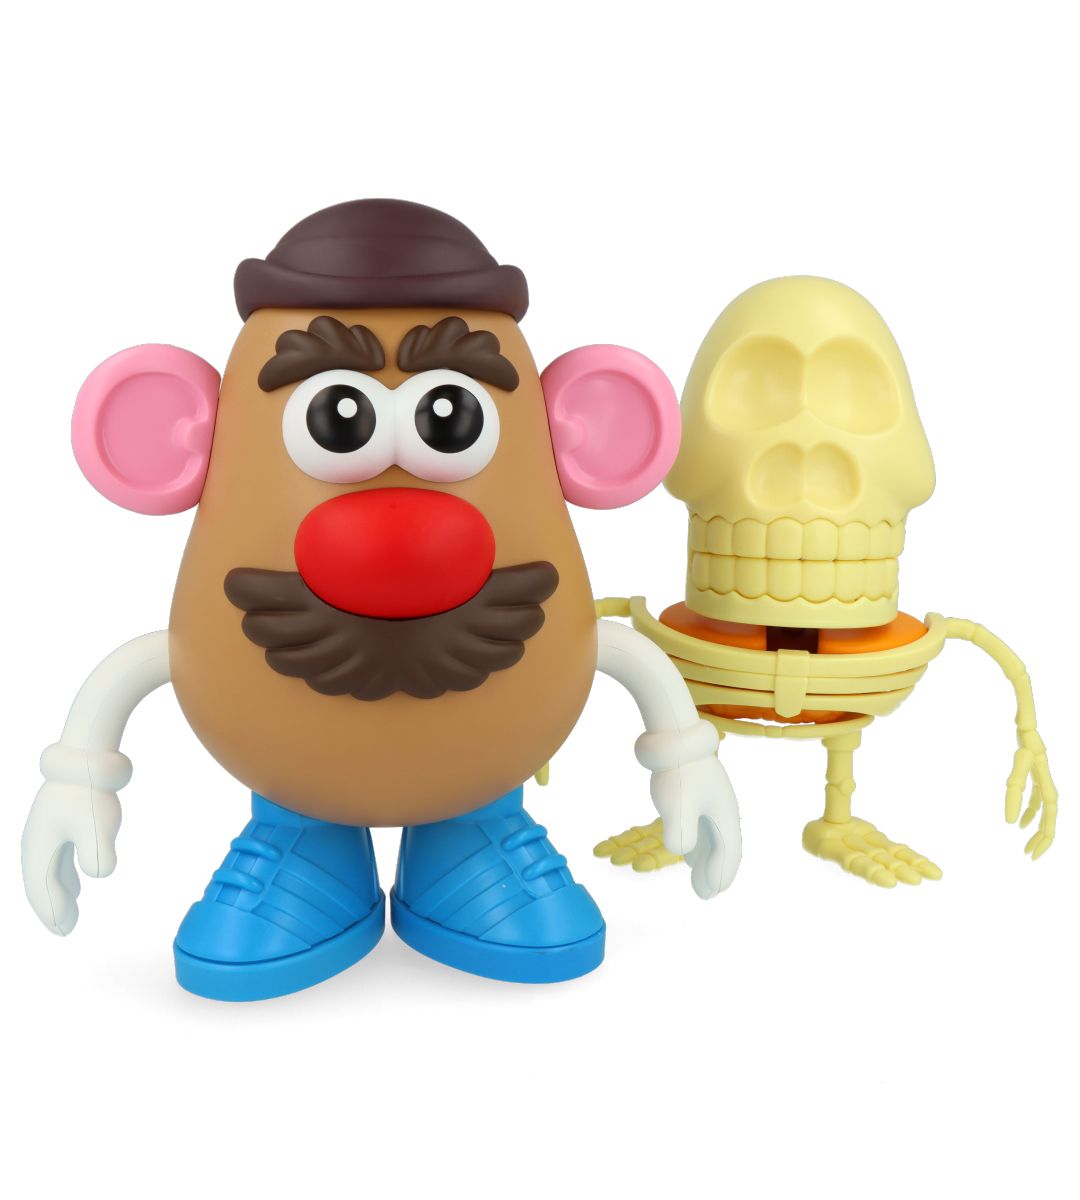 4D XXRAY Mr Potato Head